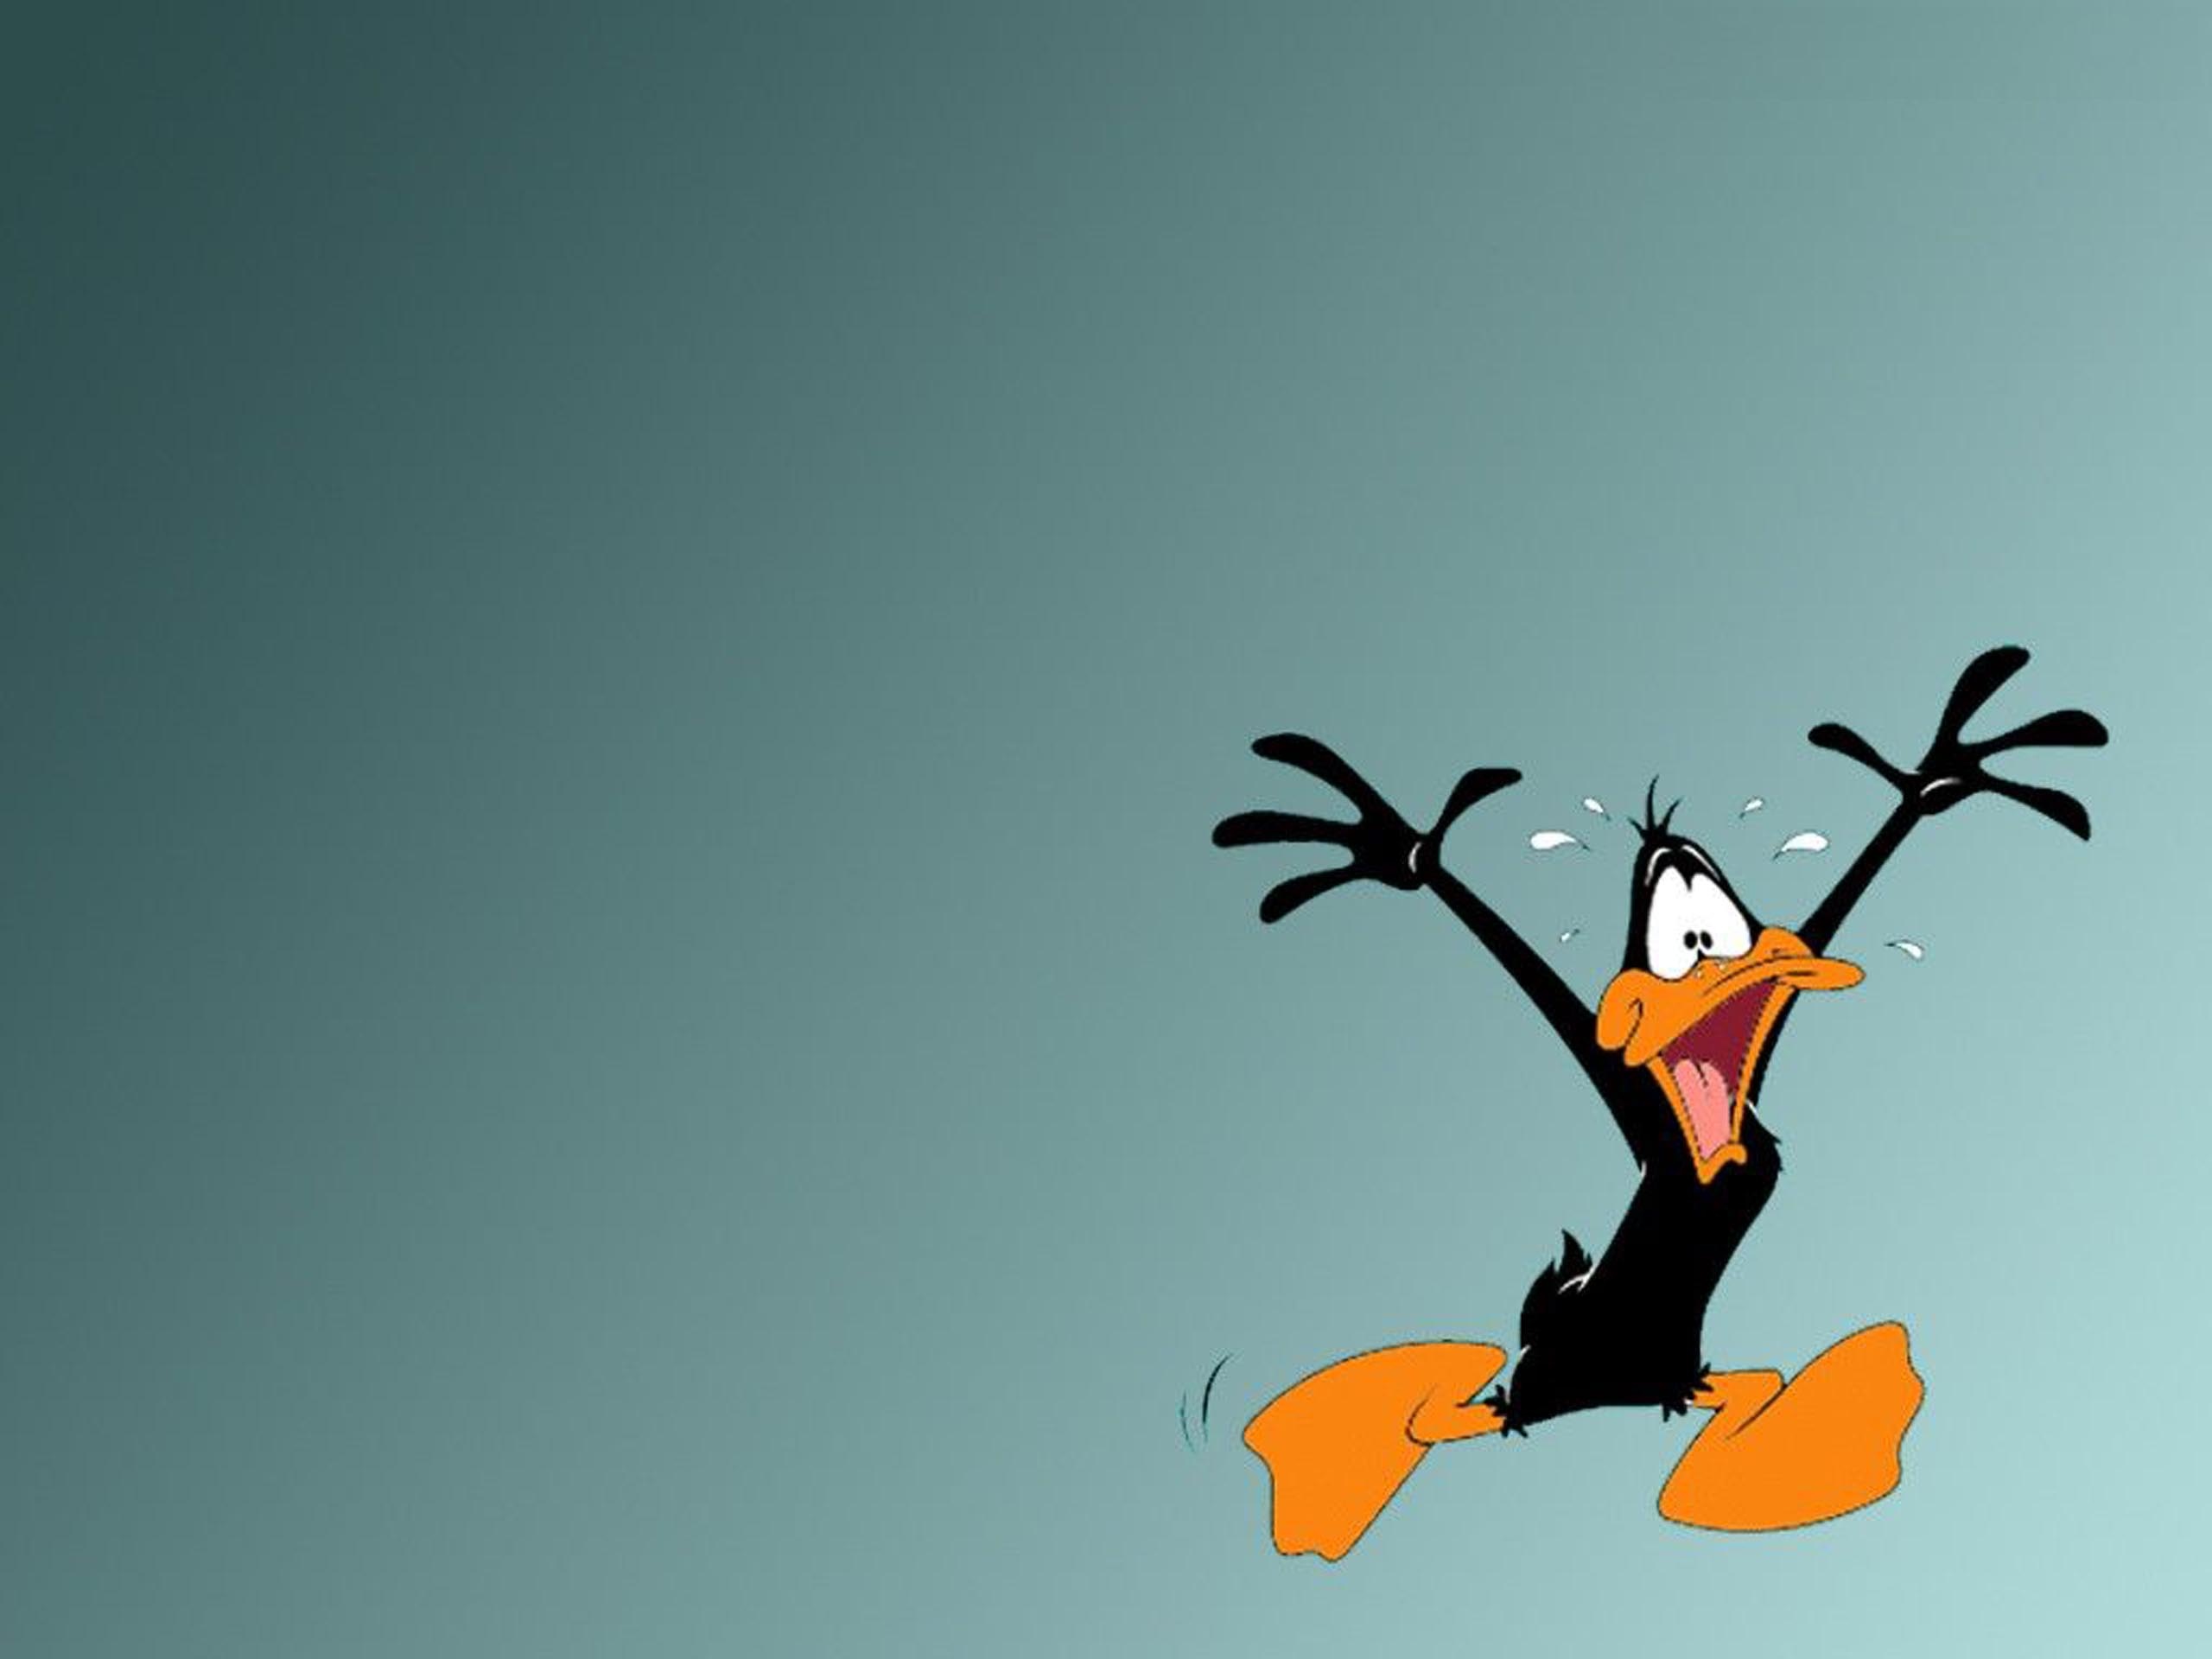 Daffy Duck wallpapers, Looney Tunes, Cartoon character, 2560x1920 HD Desktop